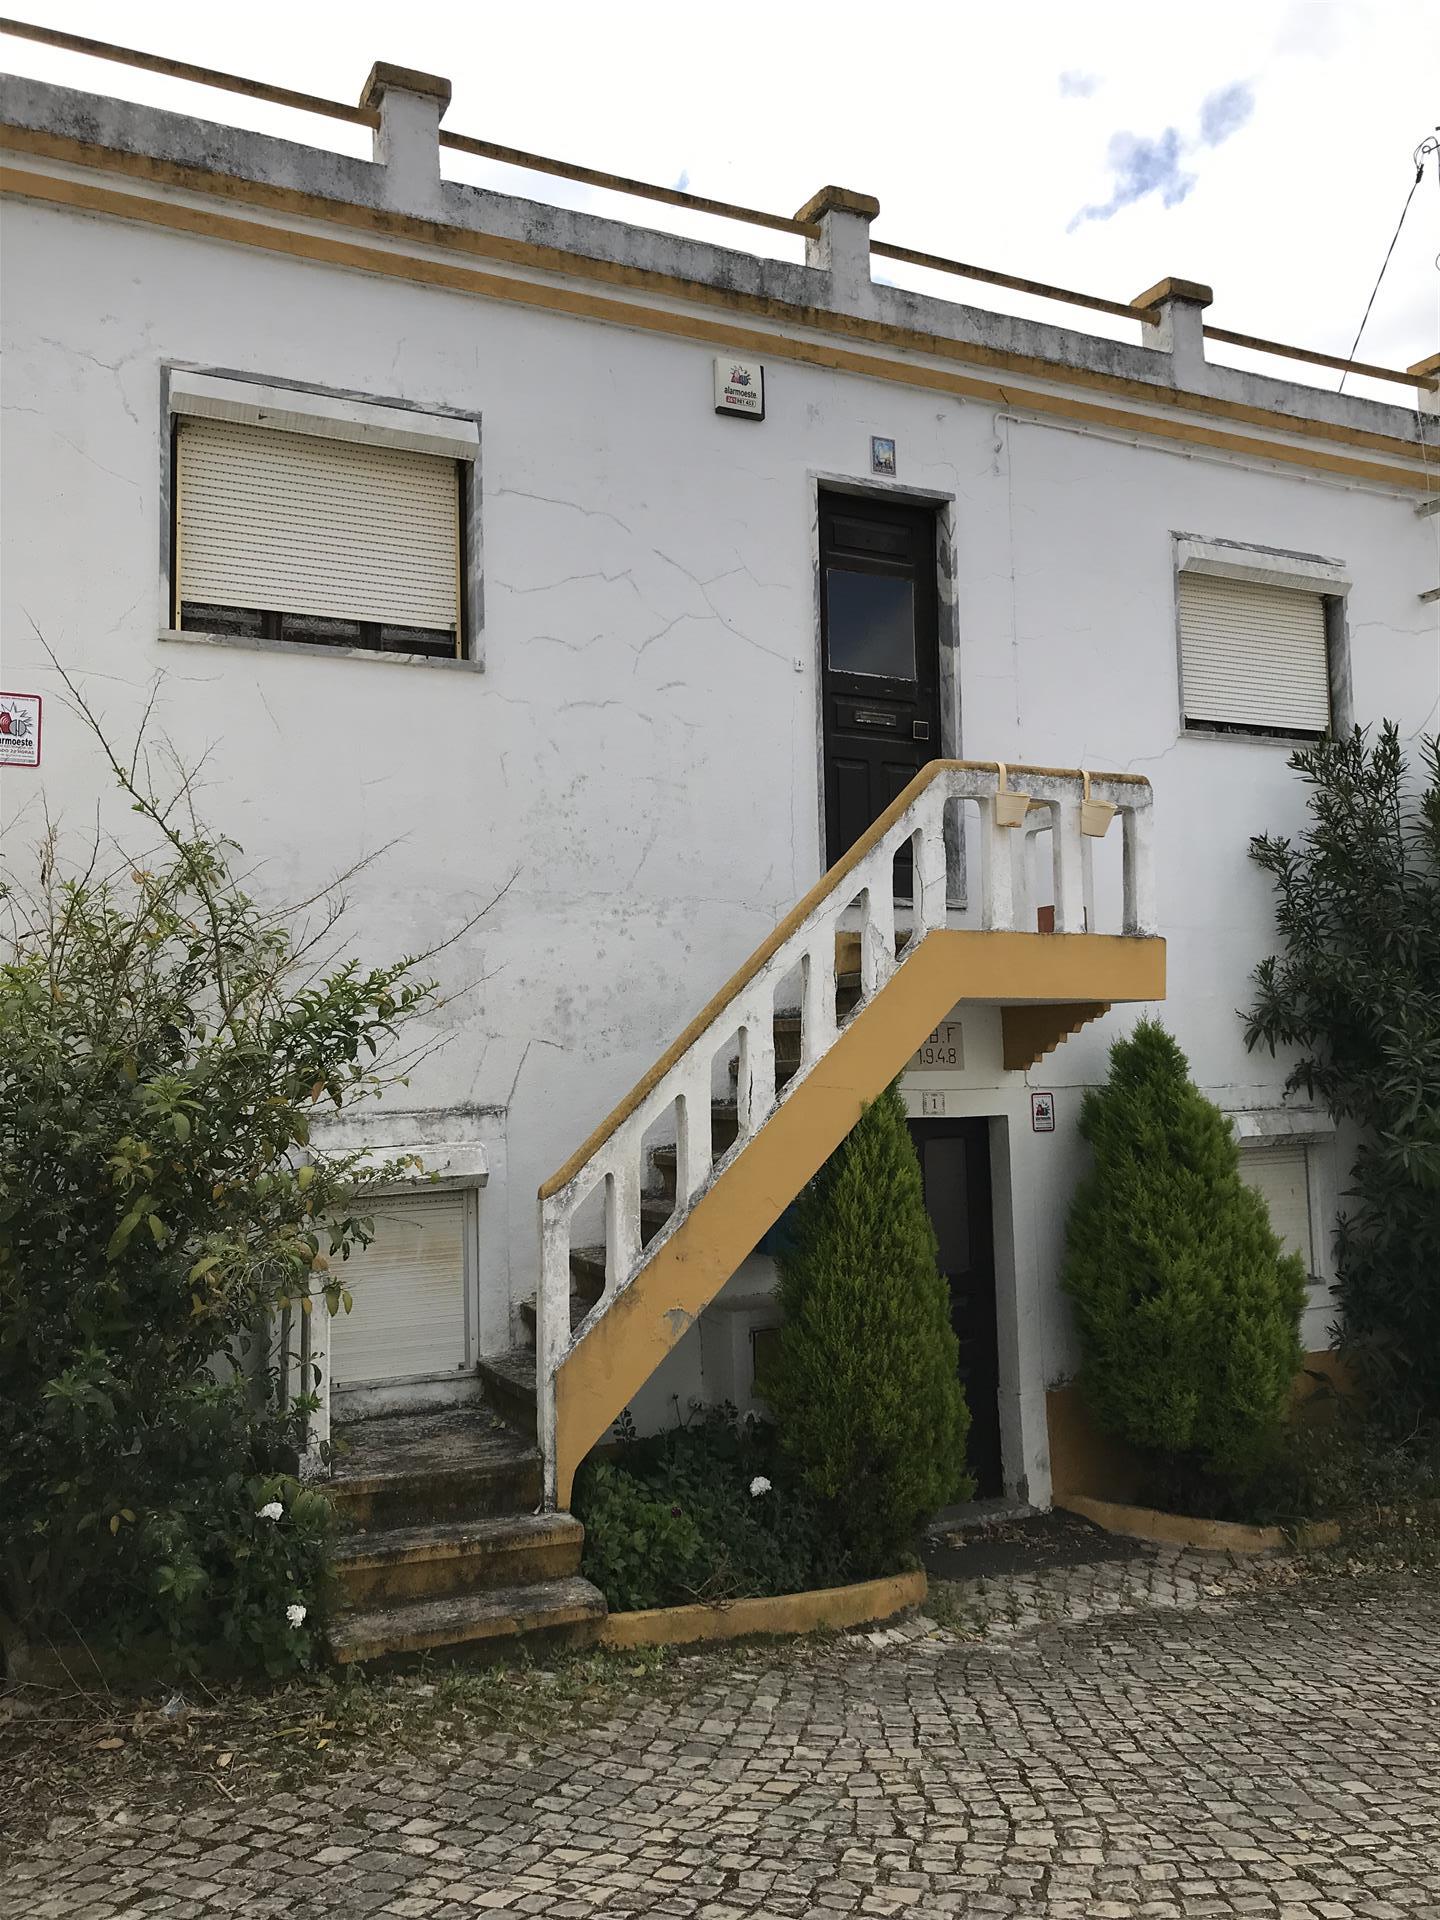 4-Bedr. House, used, near Vilar